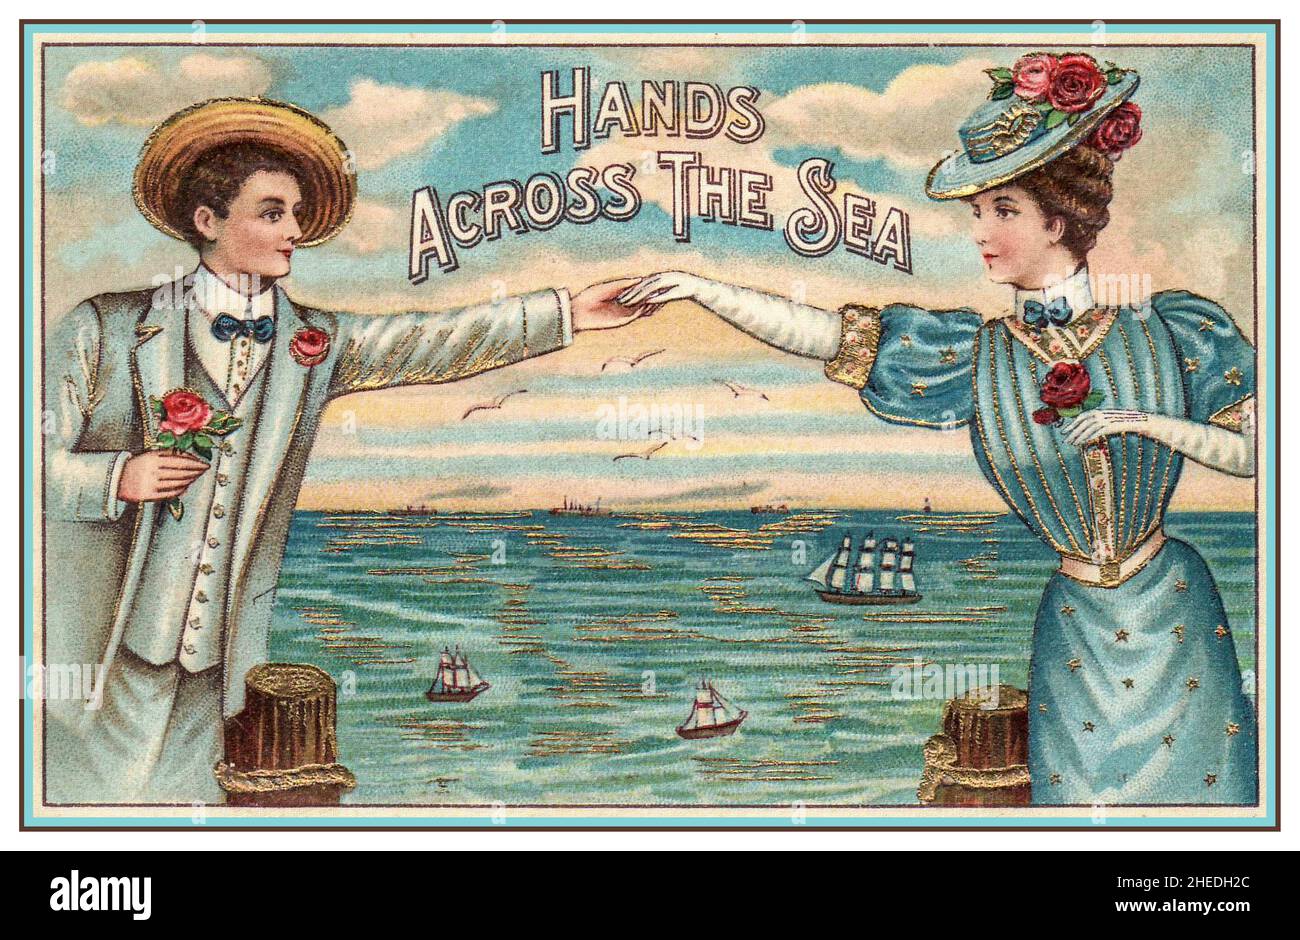 1900s Postkarte mit einem romantischen Paar Kontakt über eine Karte, um ihre Zuneigung auszudrücken Naive viktorianische liebevolle Paar Mode Kleid und Stil Stockfoto